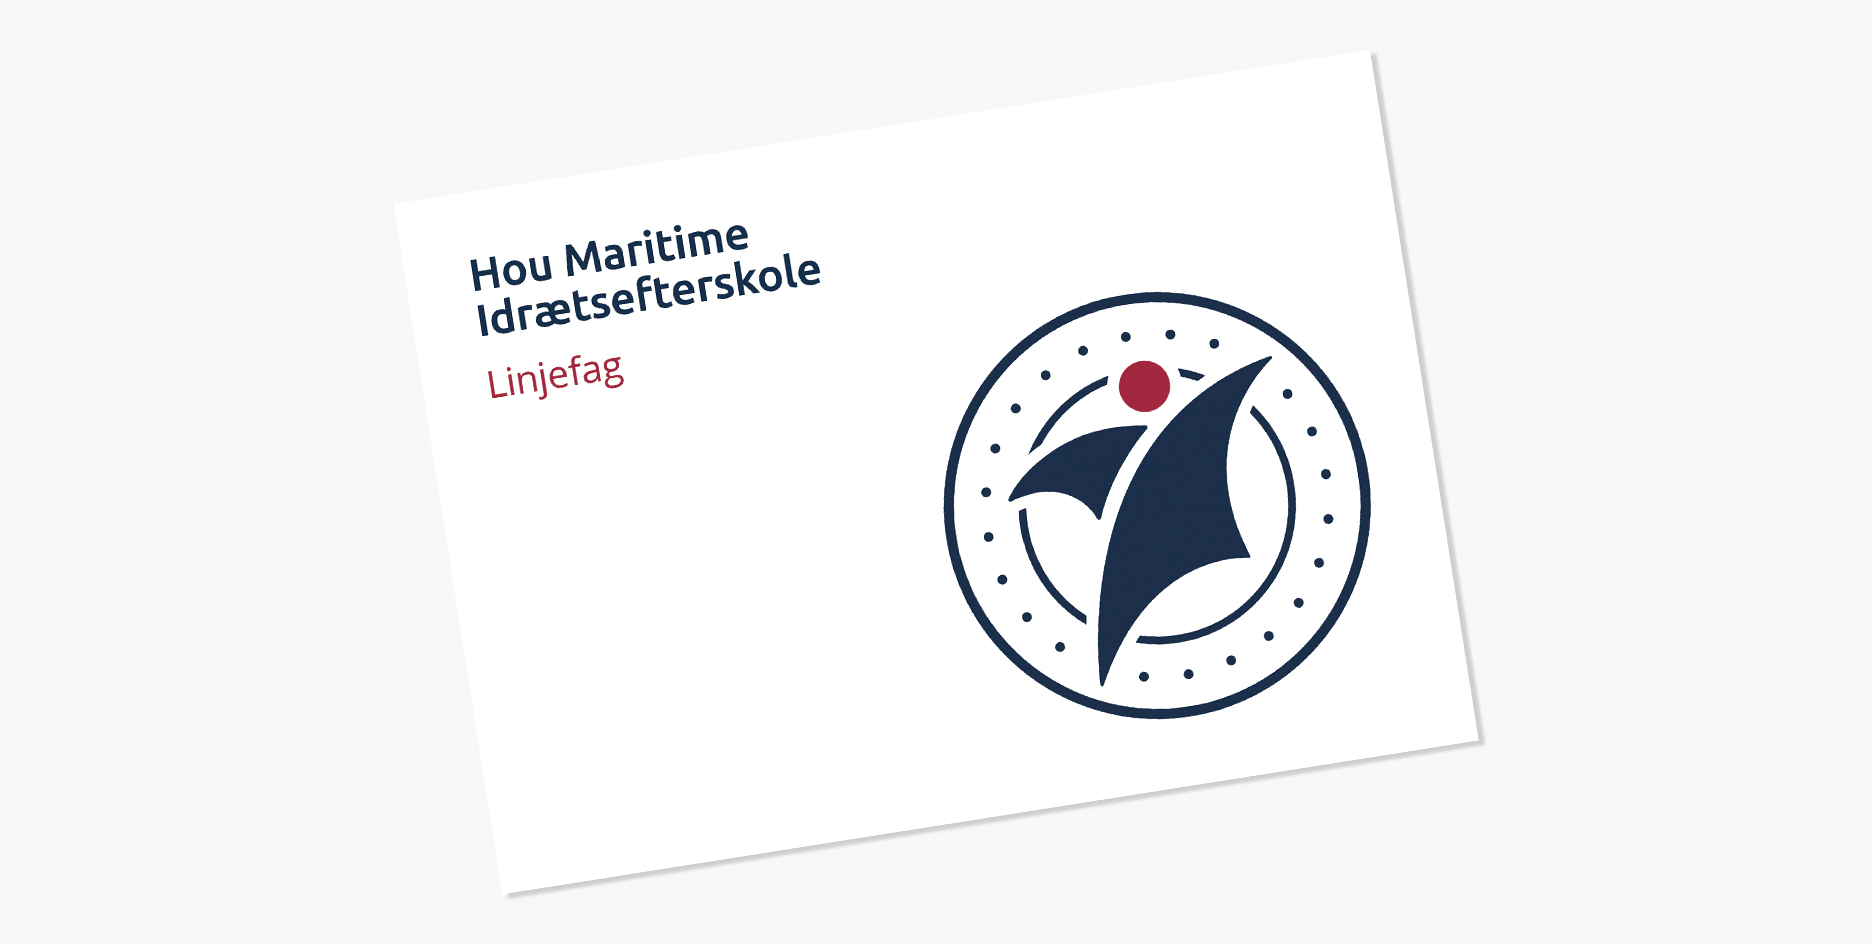 Linjefagbrochure-Hou-Maritime-Idrætsefterskole-online